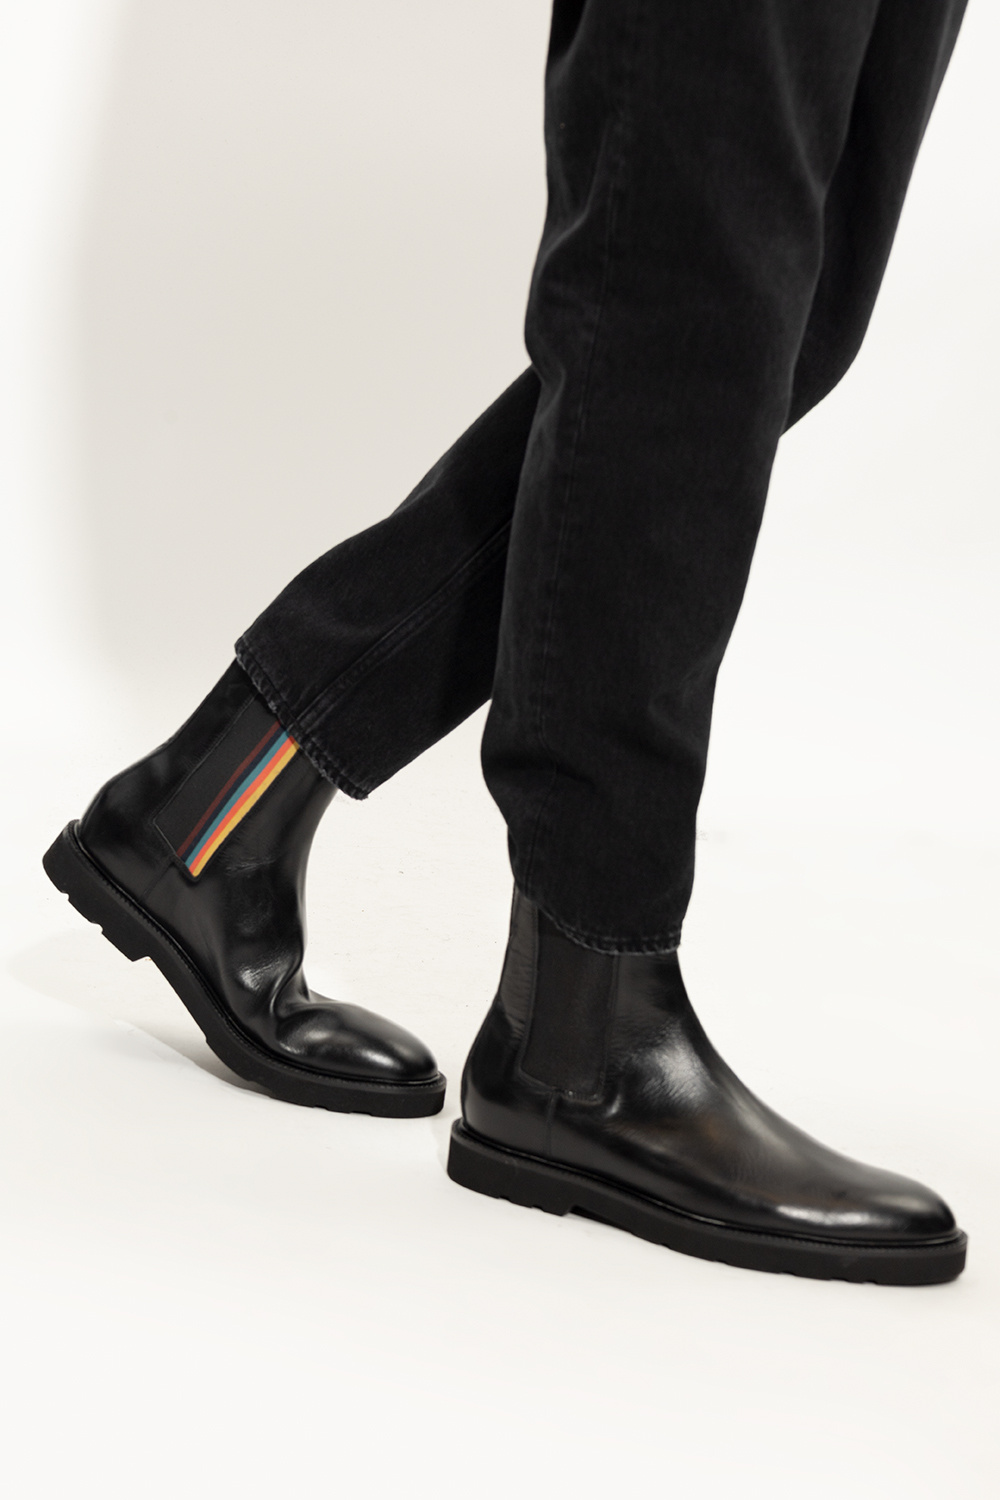 koncept Evolve Blive skør Paul Smith 'Elton' leather Chelsea boots | Men's Shoes | Vitkac